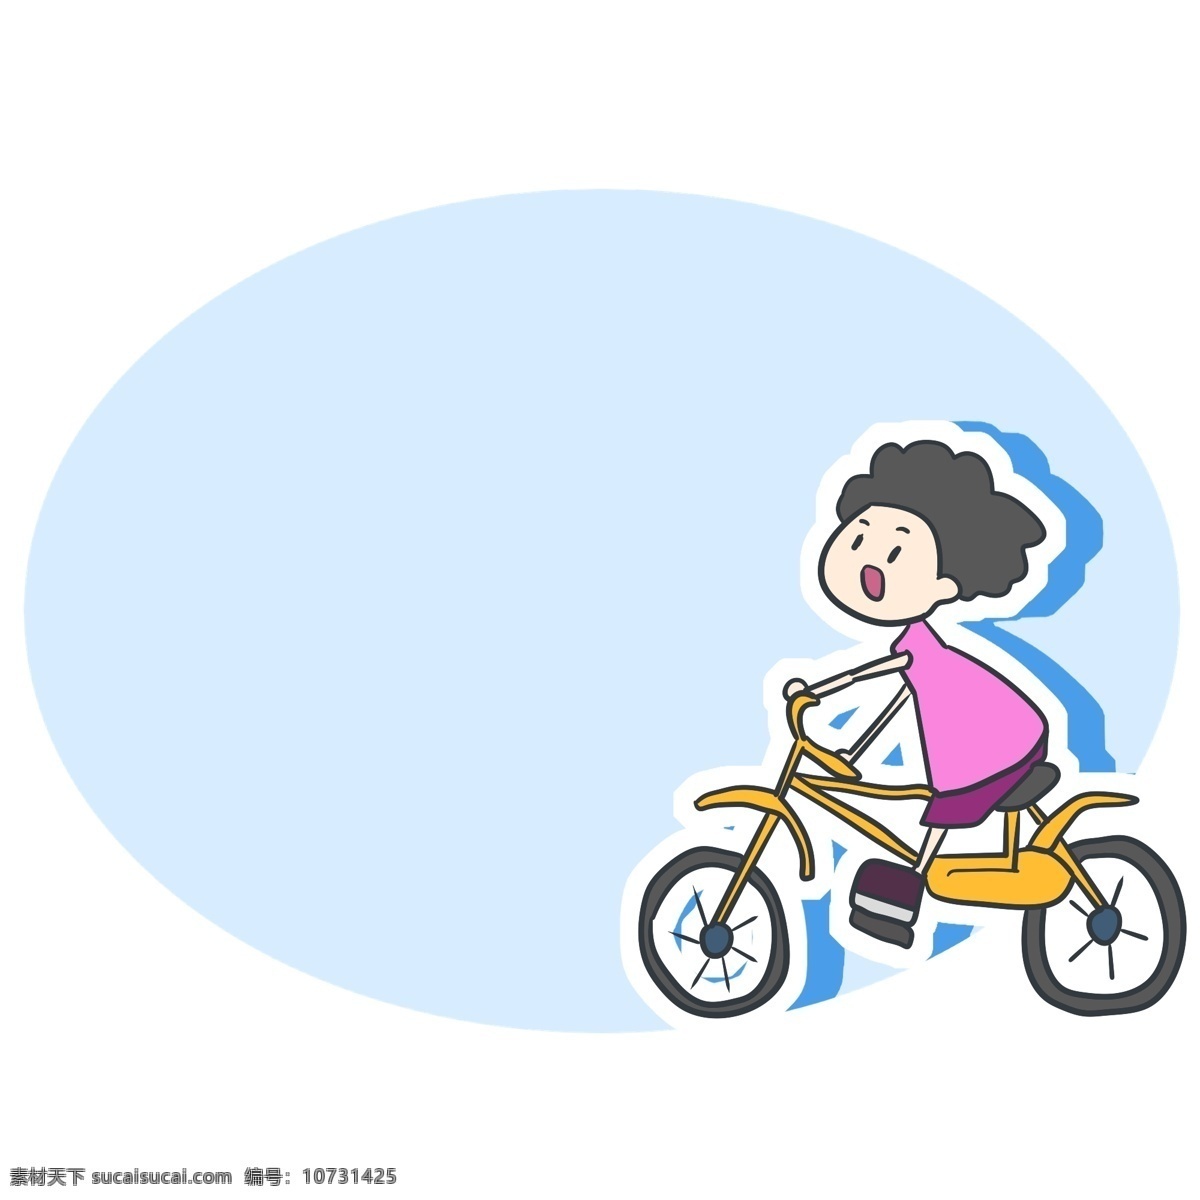 手绘 小孩 骑 自行车 边框 骑自行车 蓝色边框 椭圆形 温馨提示框 可爱边框 卡通边框 创意边框